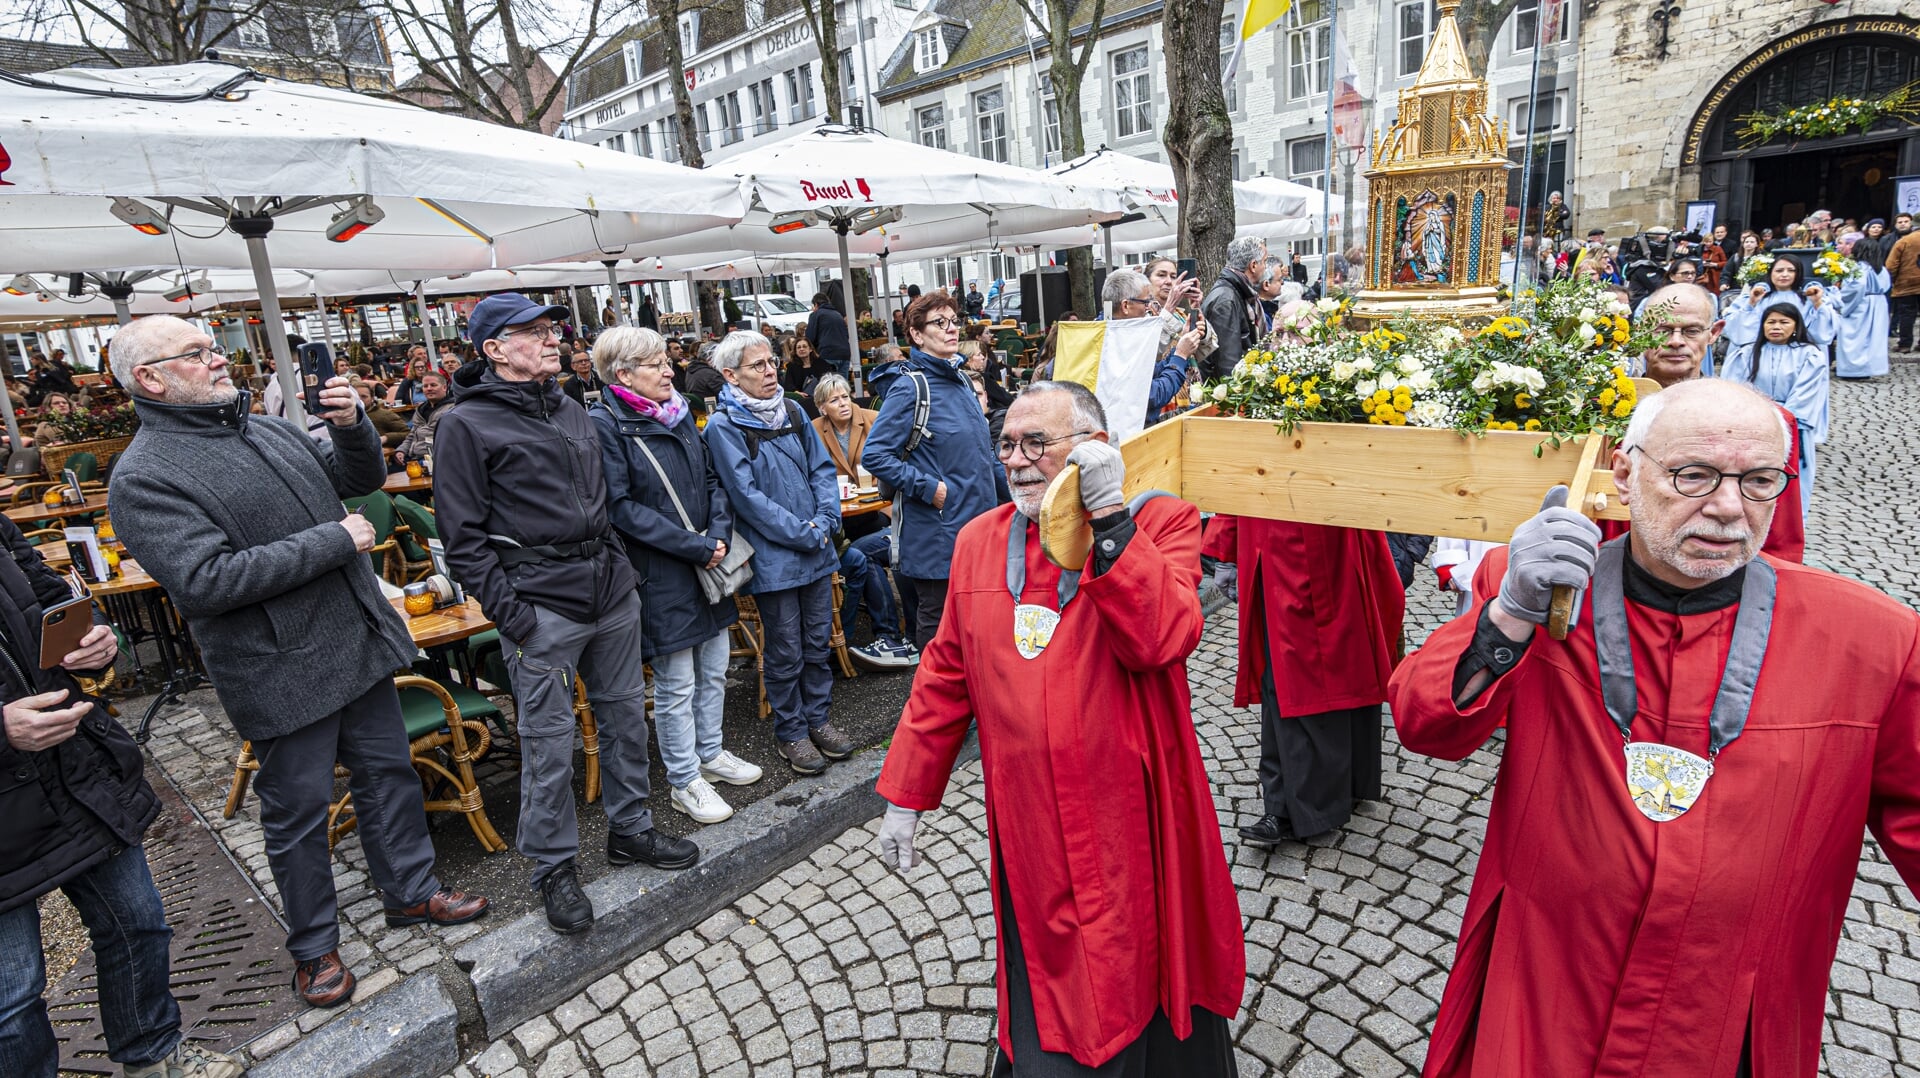 De glazen kist met glimmende reliekenhouder bevat een stukje van het lichaam van de heilige Bernadette en werd onder meer door de straten van Maastricht gedragen.